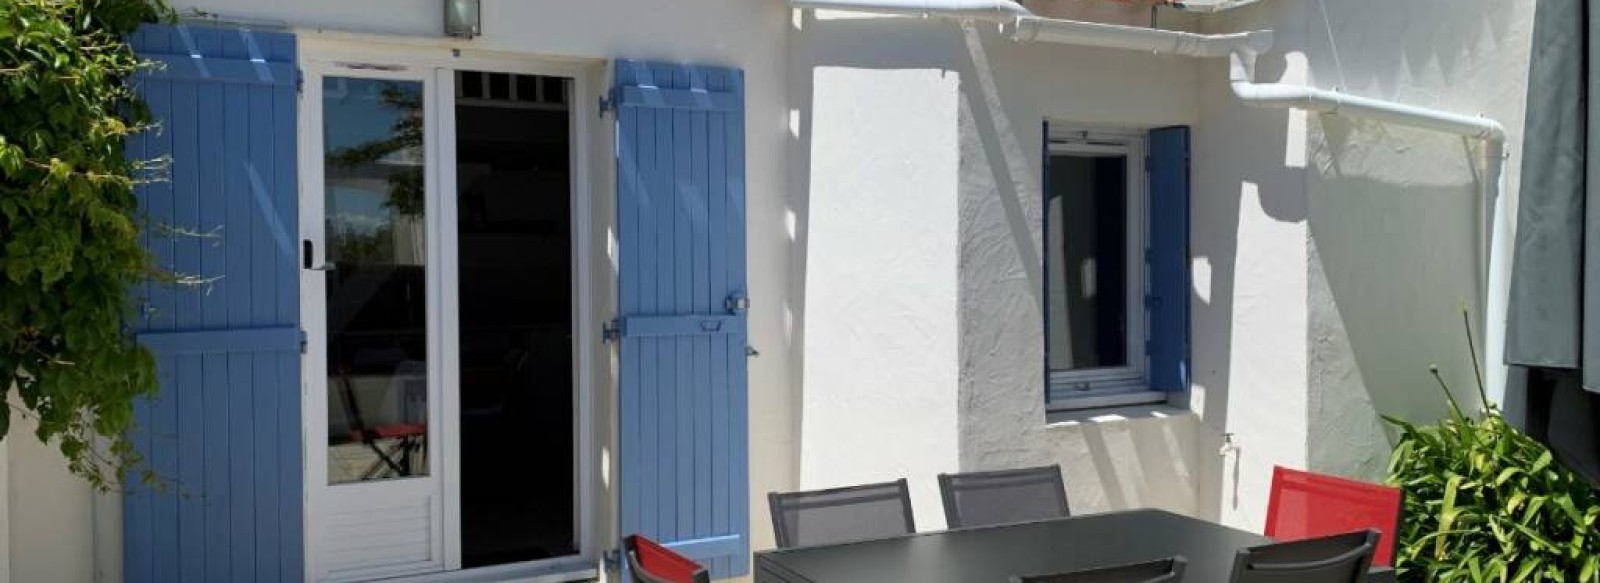 Maison de vacances dans le quartier de l'Herbaudiere sur l'ile de Noirmoutier